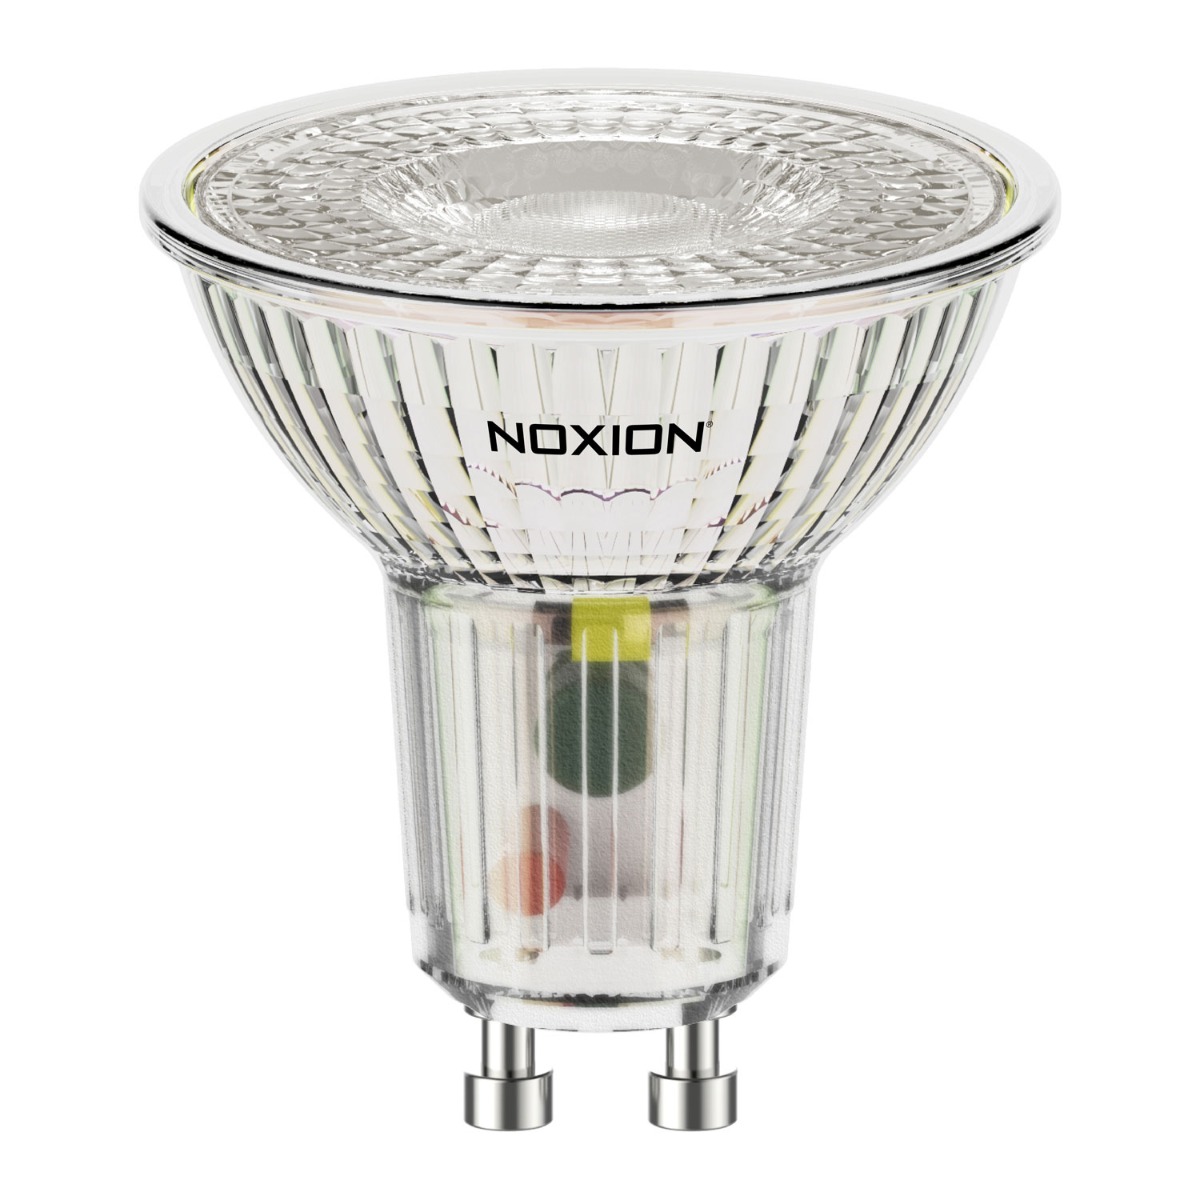 Noxion LED Spot GU10 5W 830 36D 500lm | Warm White - Replaces 60W